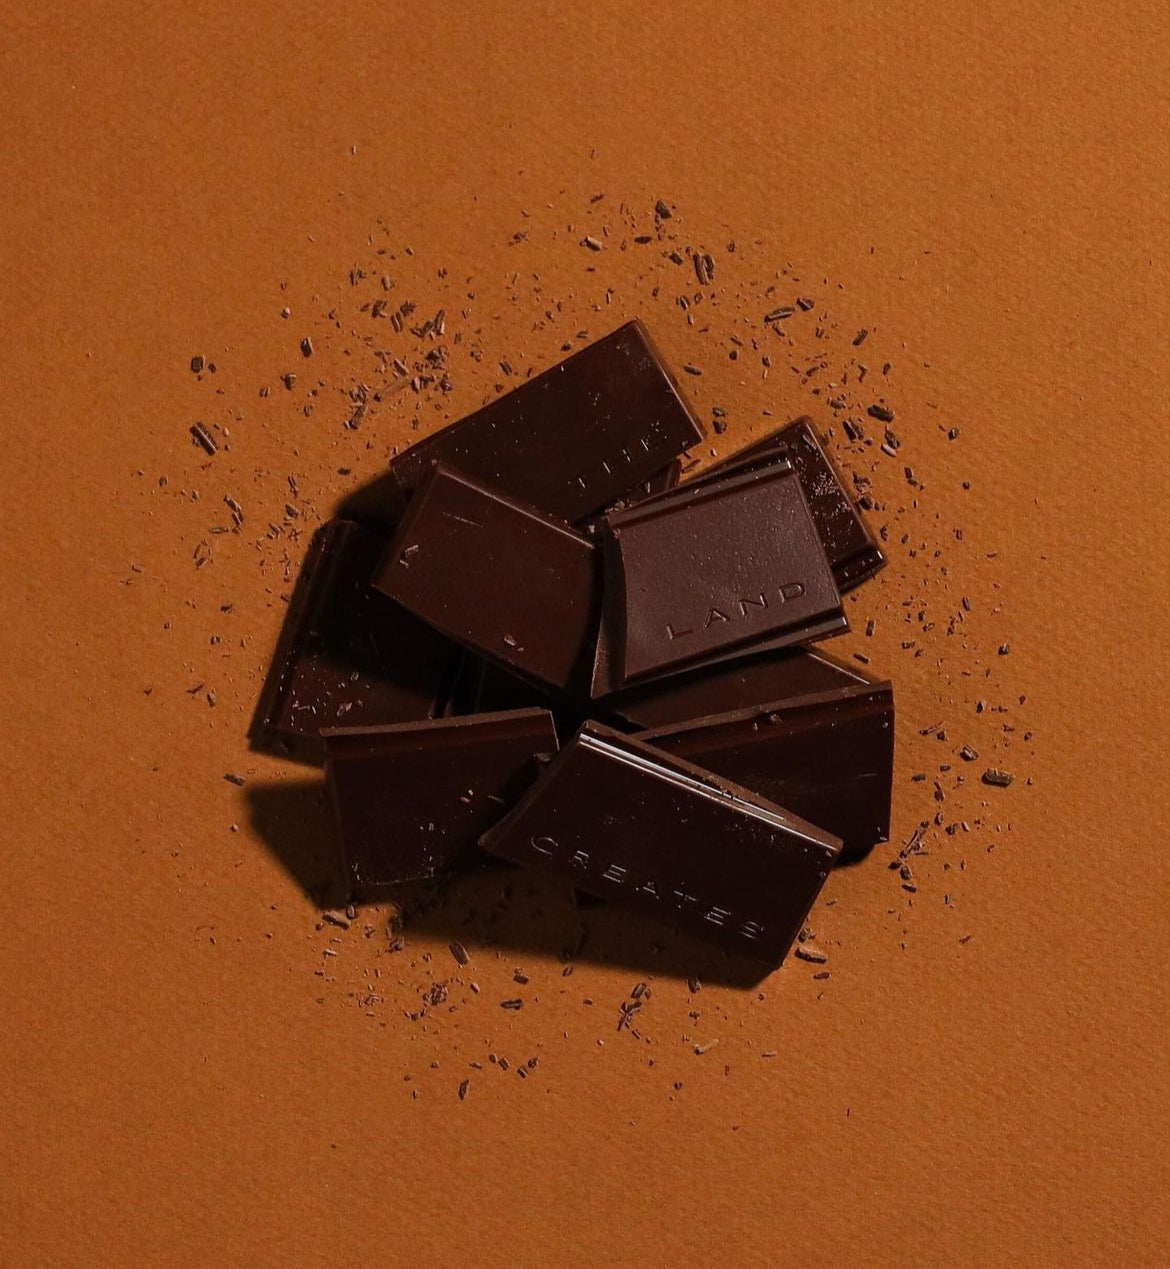 69% Madagascar Chocolate by Onyx Coffee Lab